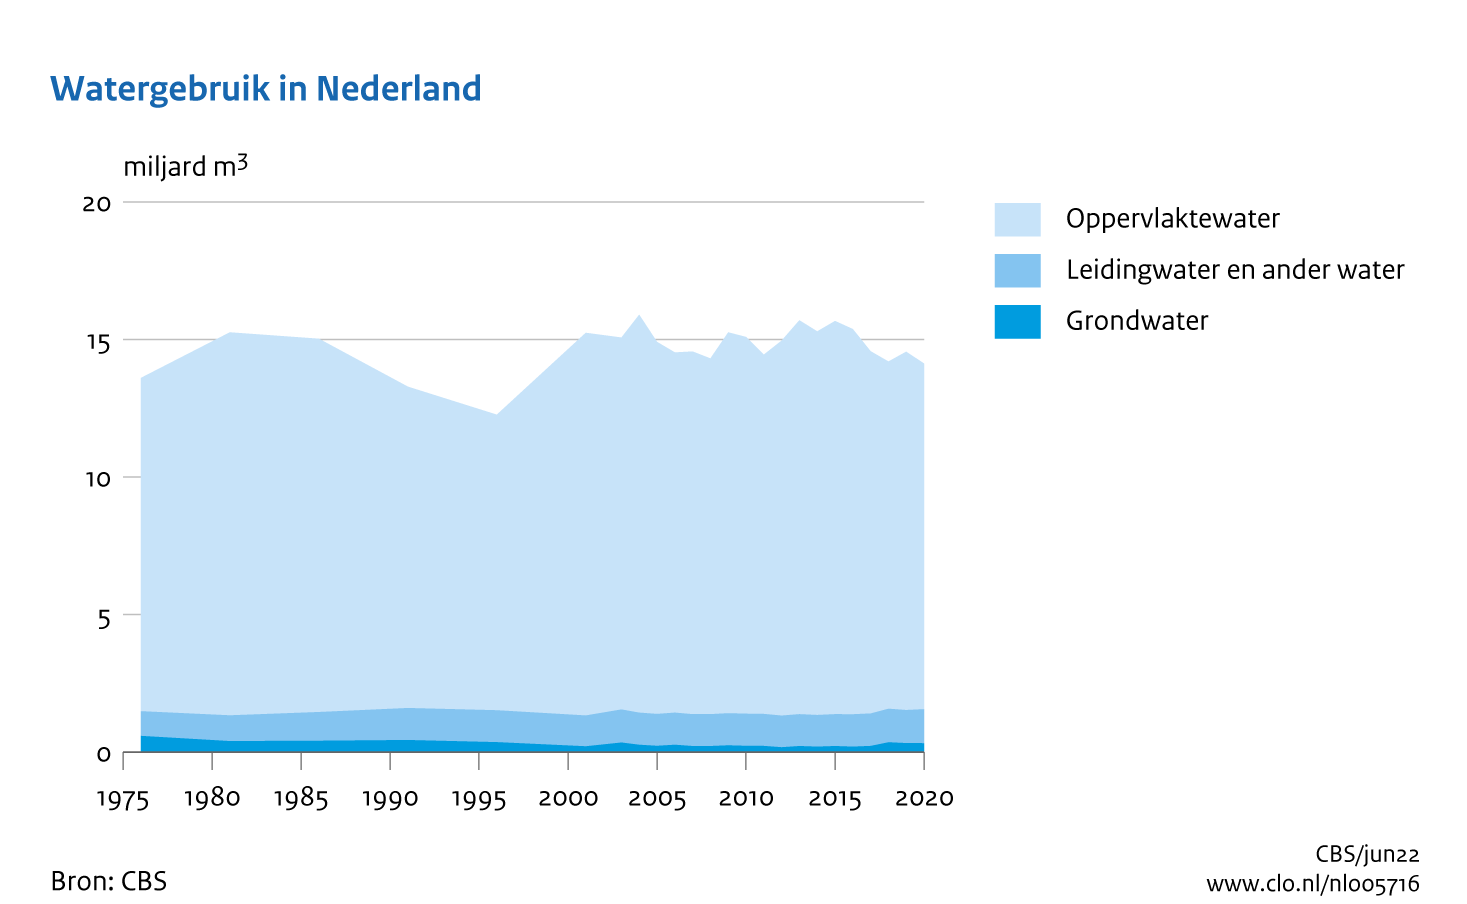 Figuur Watergebruik in Nederland 1976-2020. In de rest van de tekst wordt deze figuur uitgebreider uitgelegd.